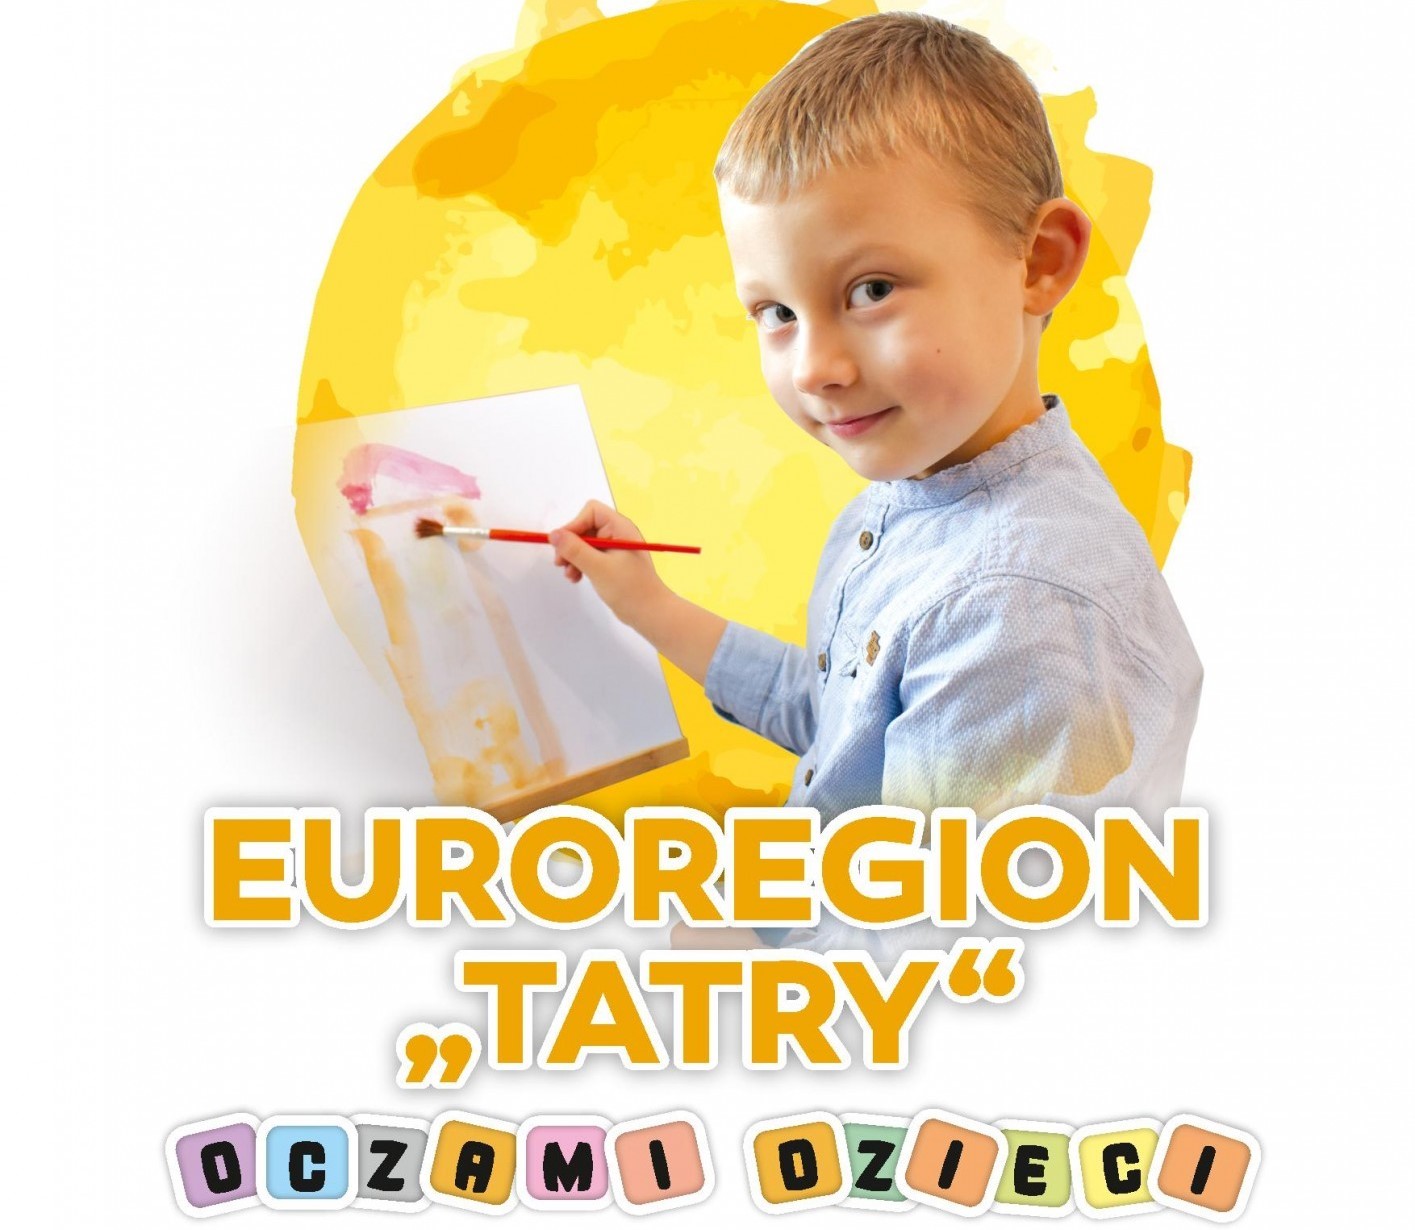 Plakat - euroregion tatry oczami dzieci. Mały chłopiec maluje farbami rysunek.